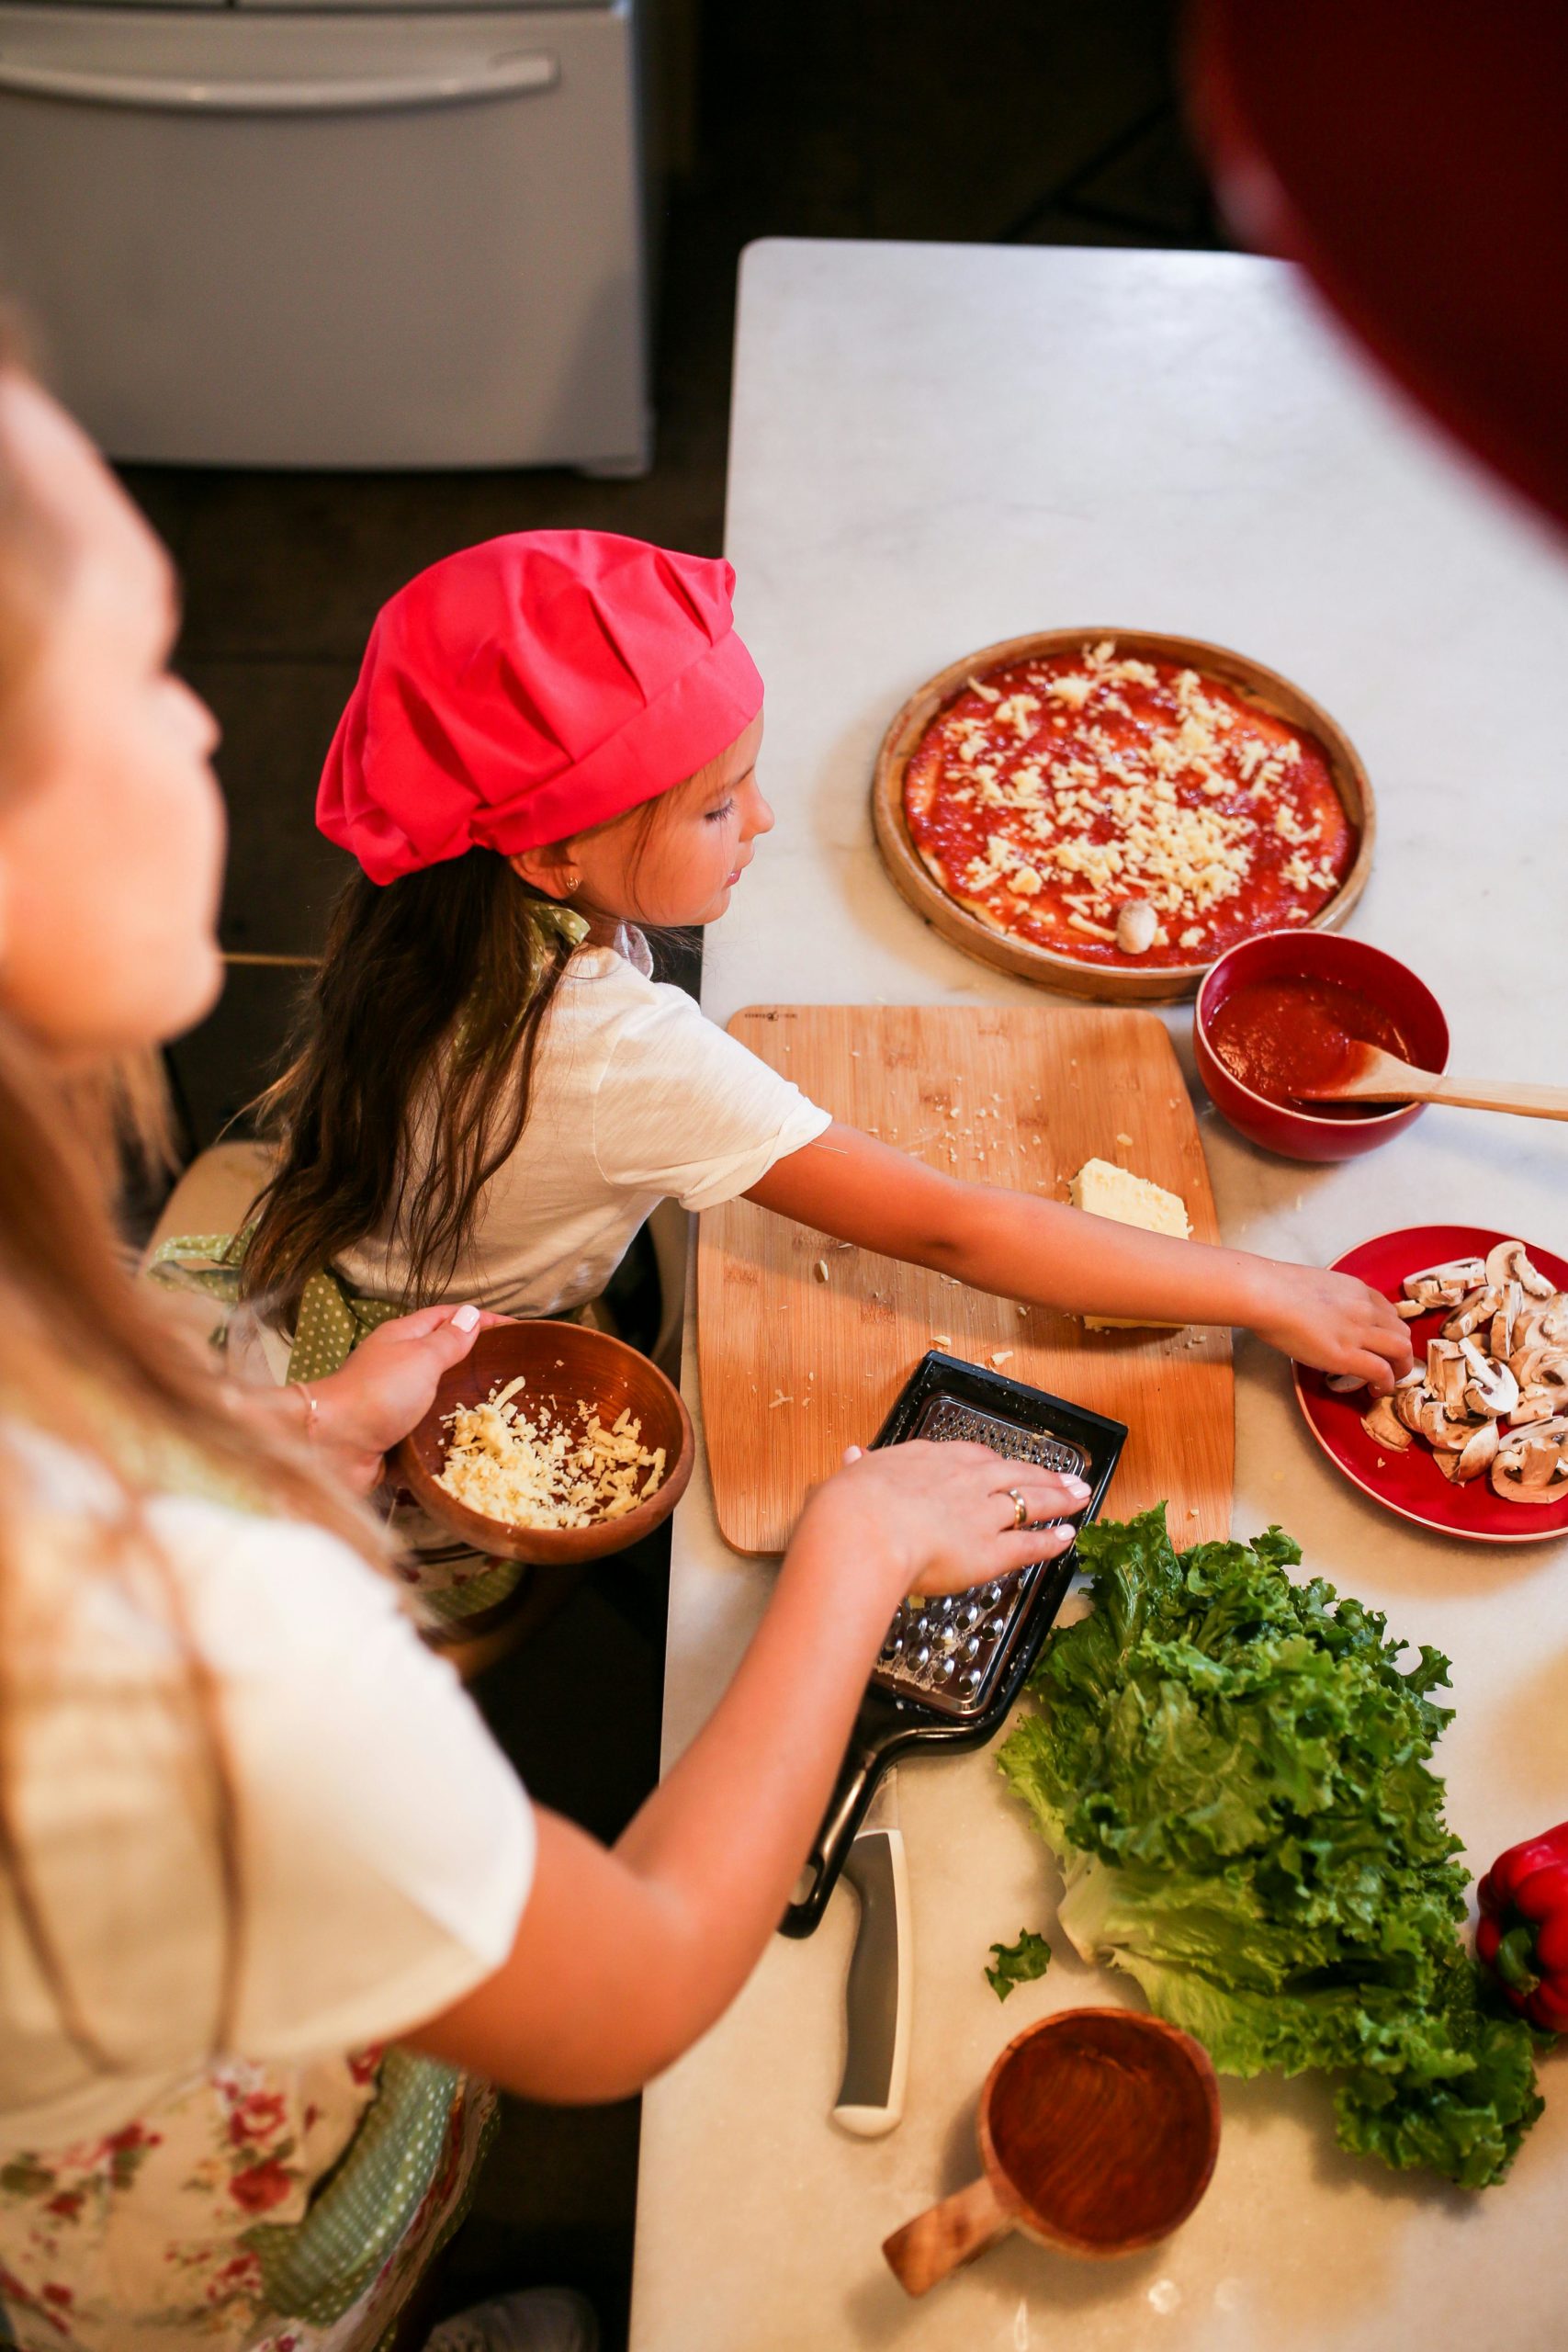 Ideas de menús sanos, rápidos y económicos para hacer este verano con niños